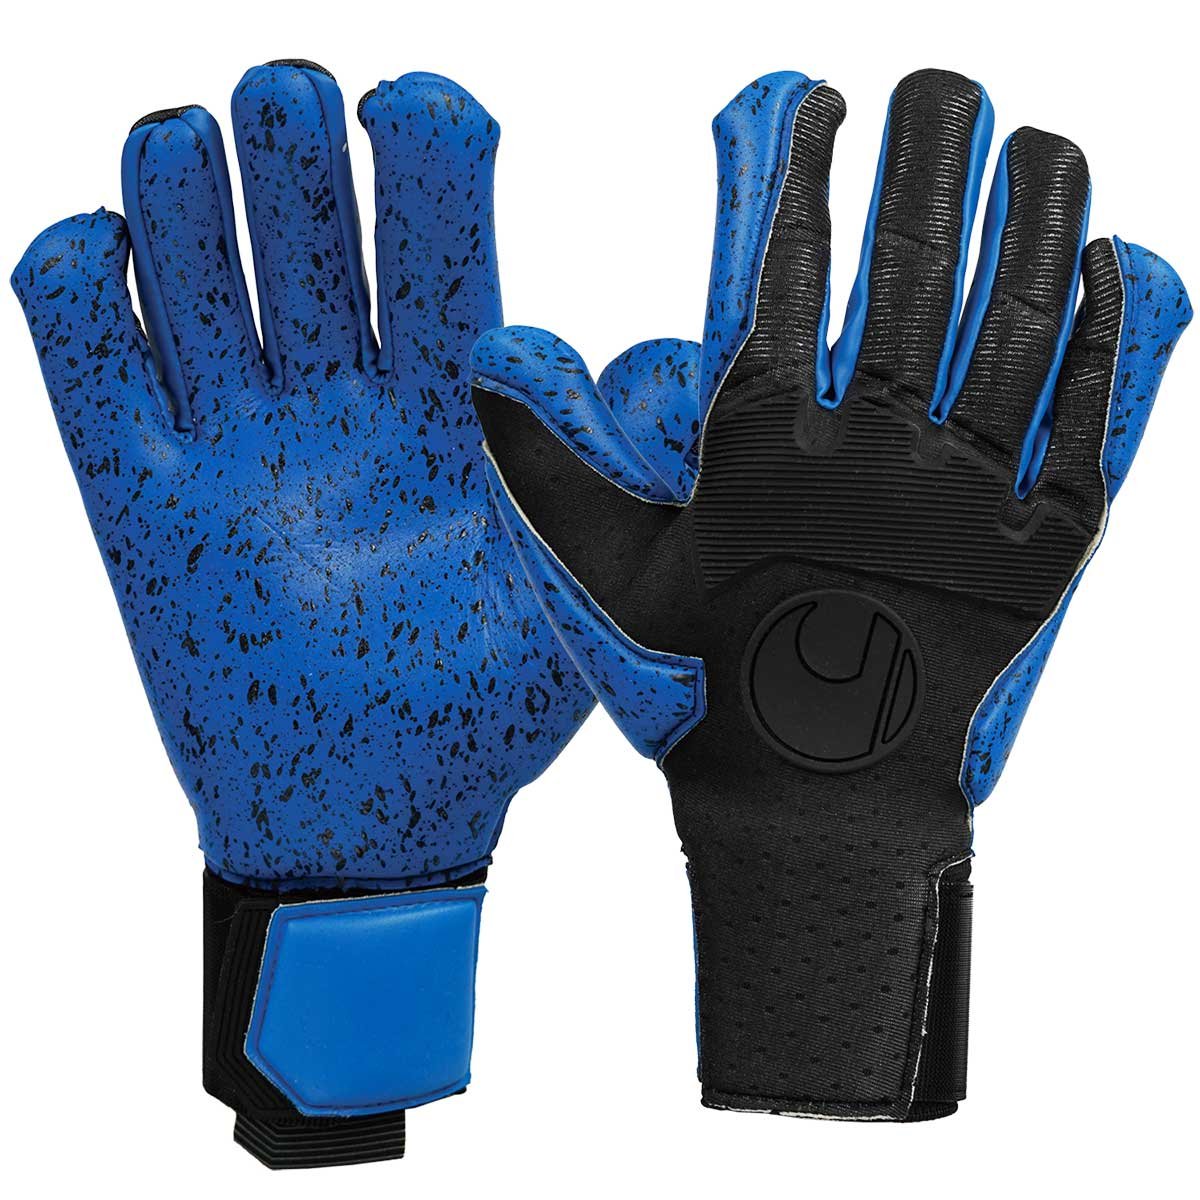 Вратарские перчатки UHLSPORT AQUAGRIP HN #274 aqua blue/black купить